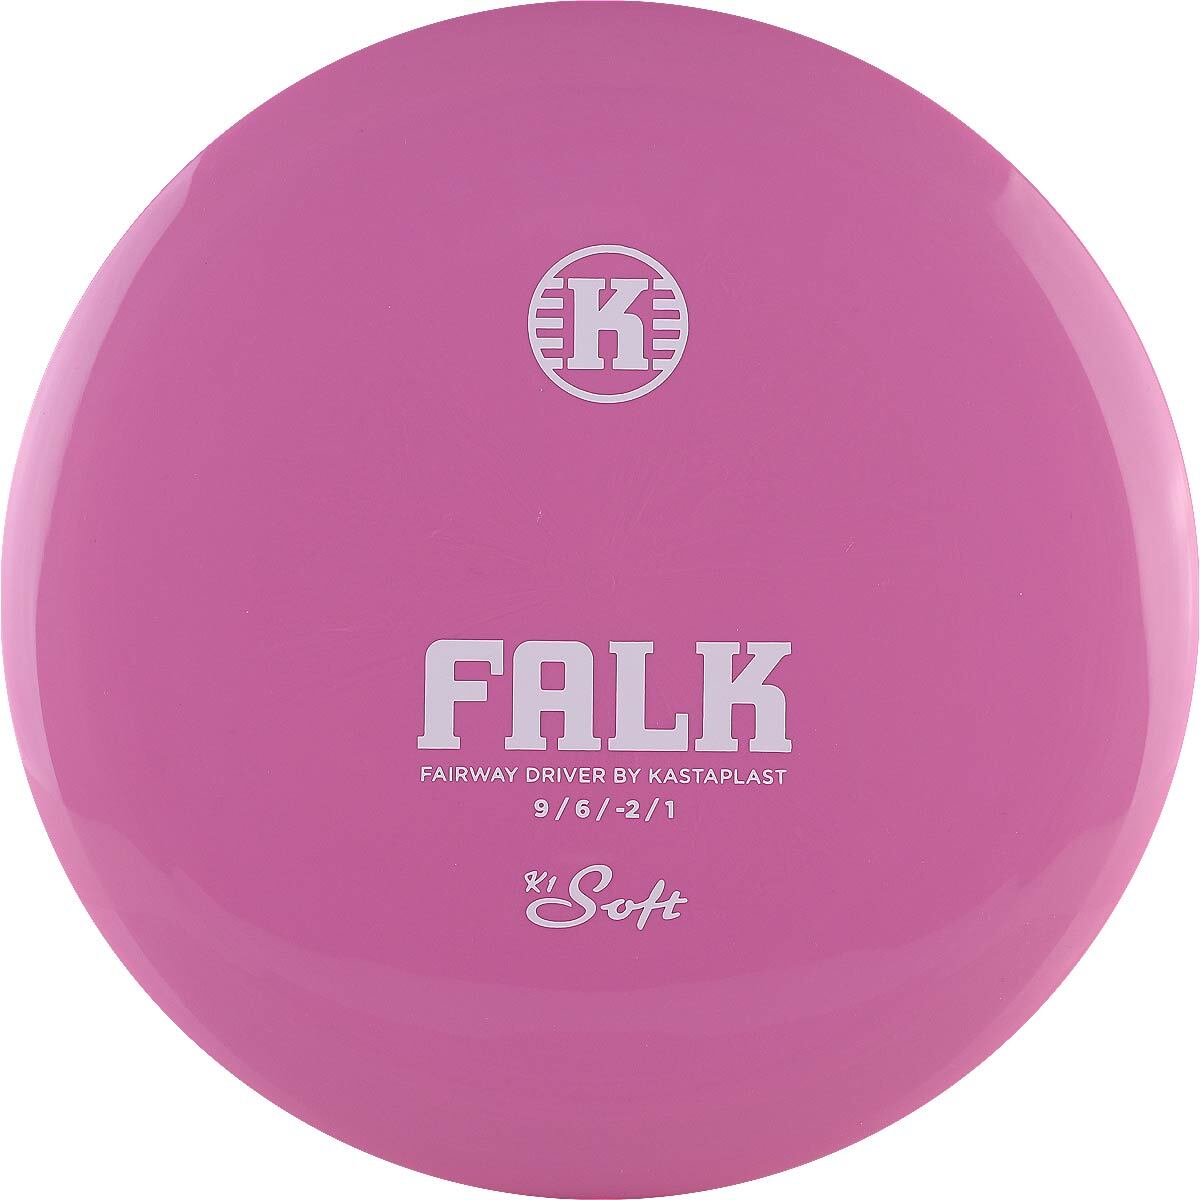 K1 Soft Falk